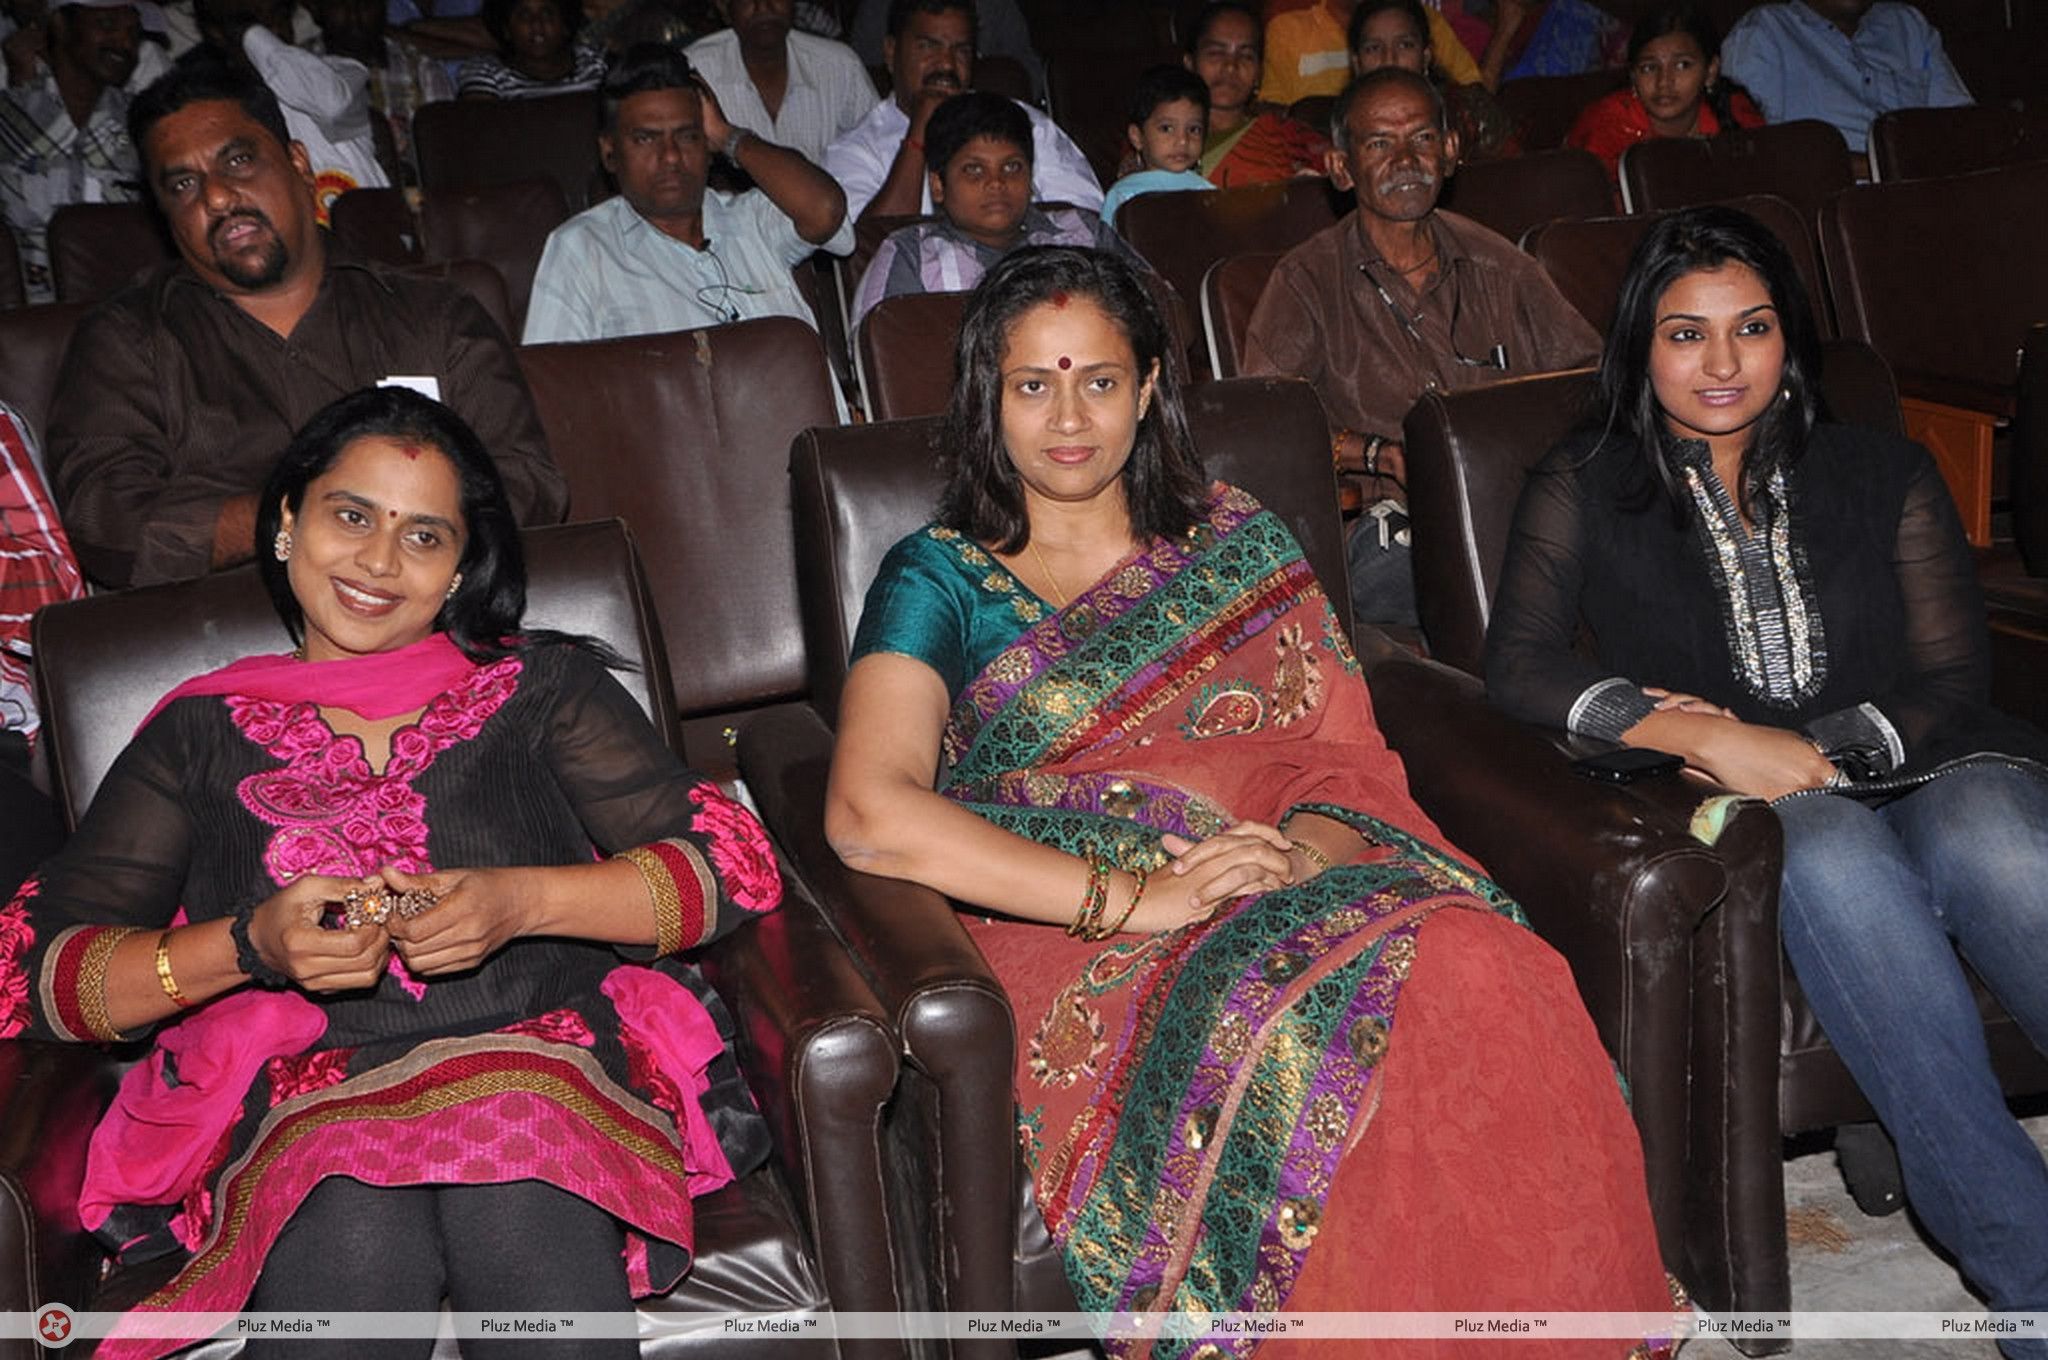 Aarohanam Film Felicitated Event Stills | Picture 326565